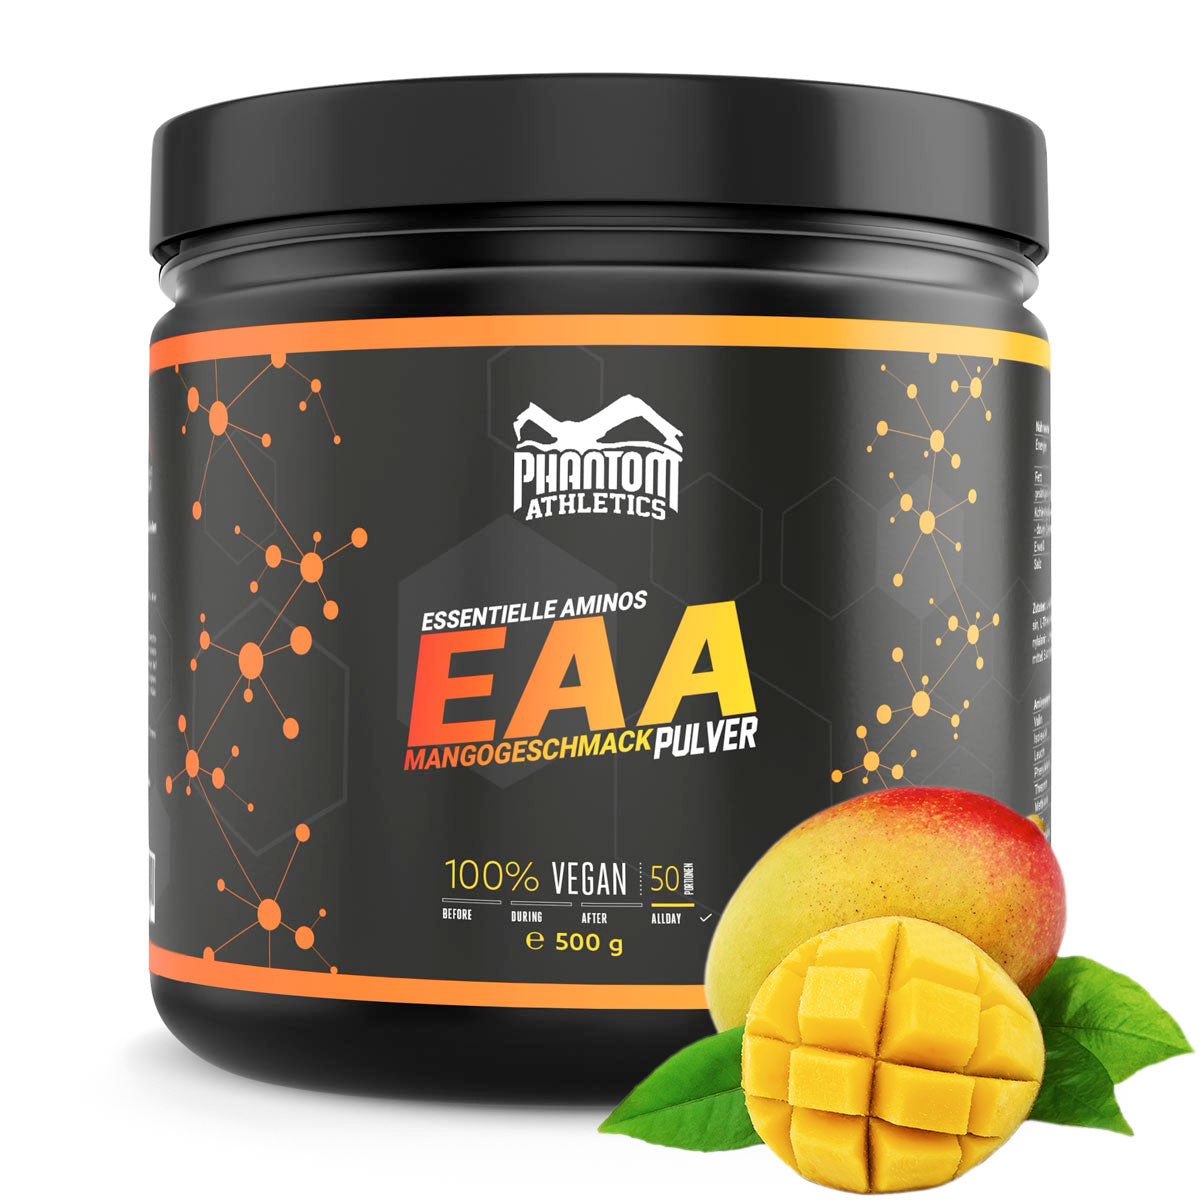 Phantom EAA - Acides aminés essentiels au goût de mangue. Pour des soins optimaux dans les arts martiaux.